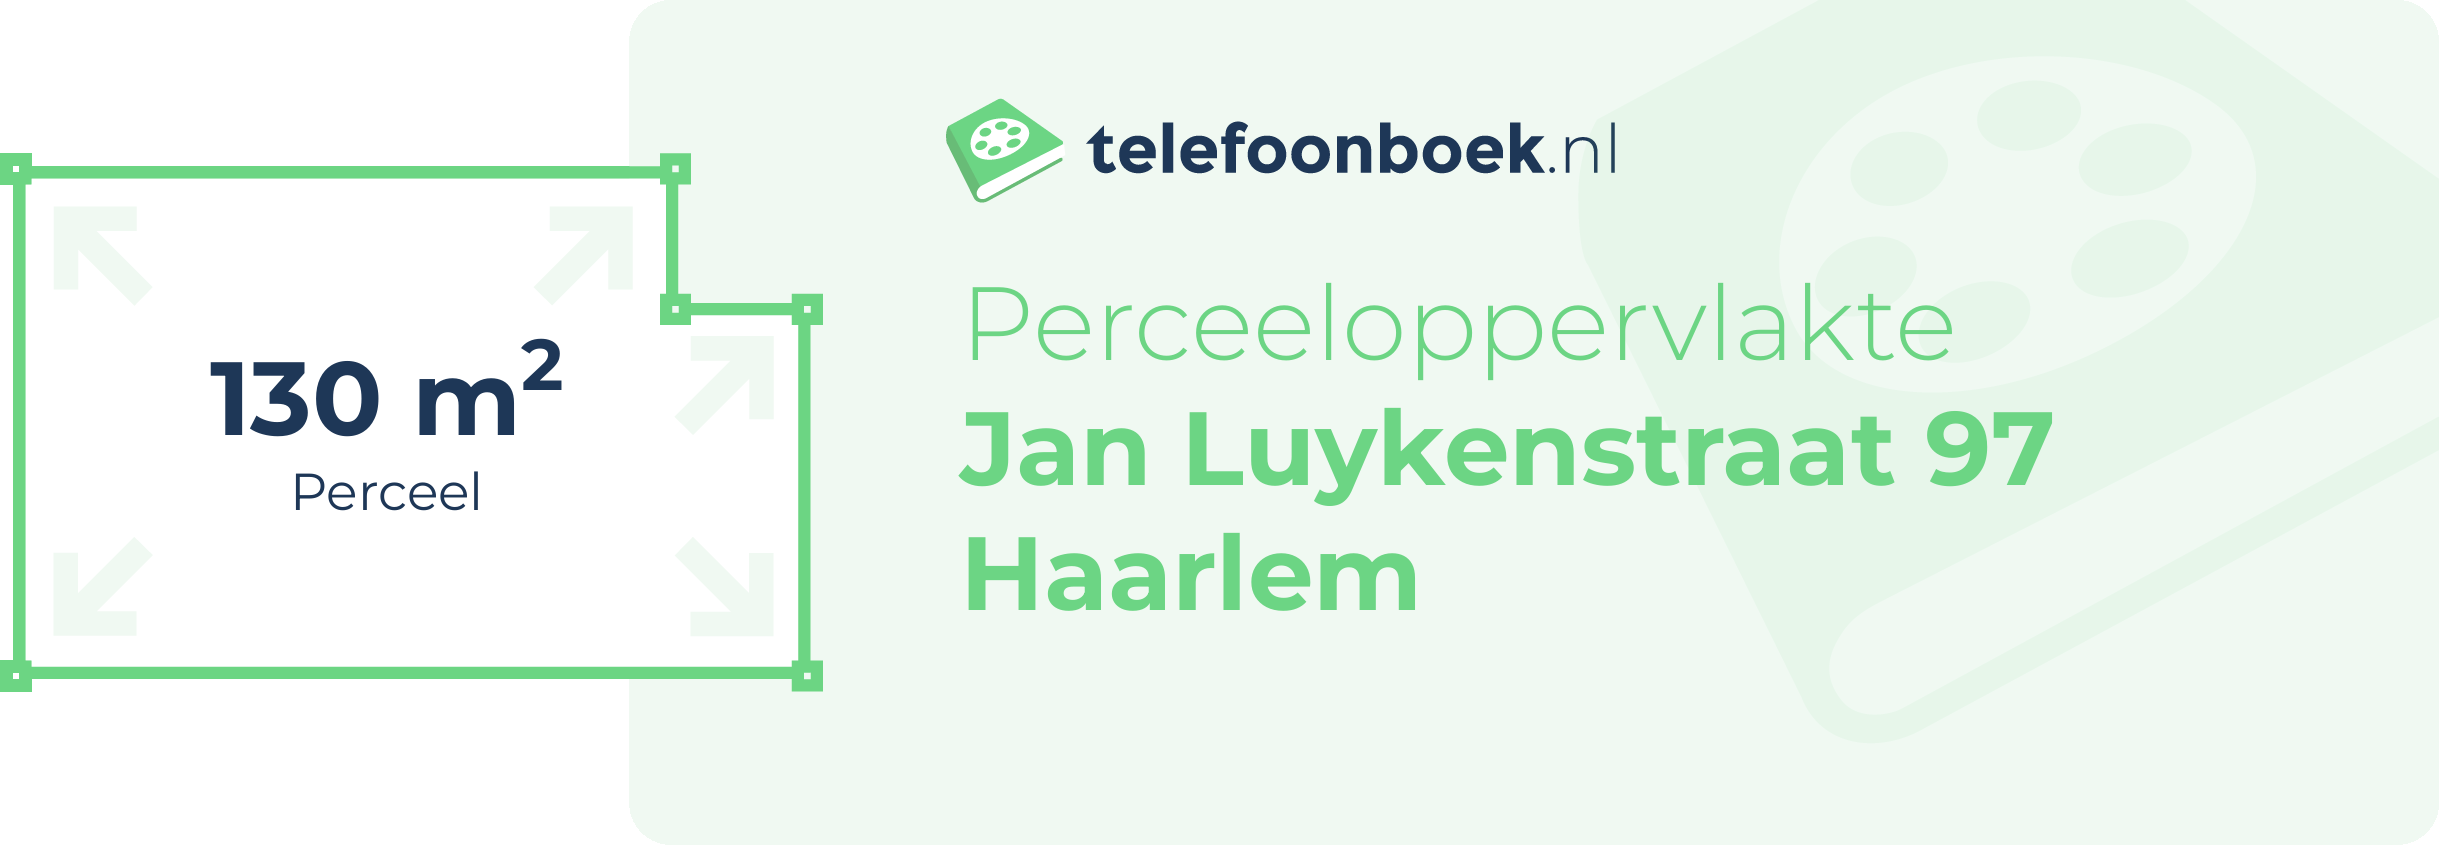 Perceeloppervlakte Jan Luykenstraat 97 Haarlem